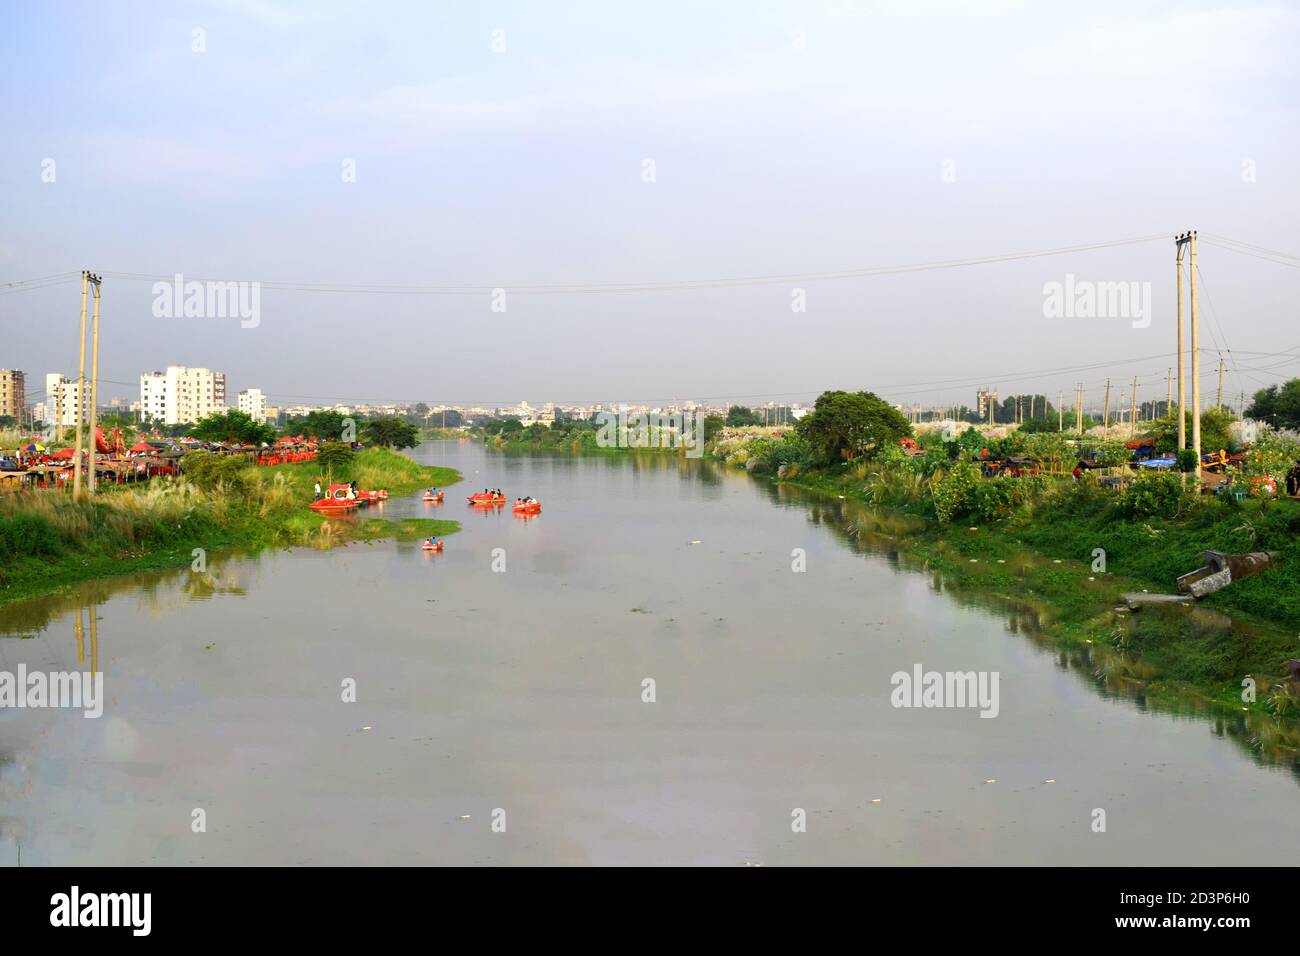 Belle vue sur le lac la photo a été prise depuis le lac Hatirjheel, Hatirjheel, Uttara, le 06 octobre 2020. Banque D'Images